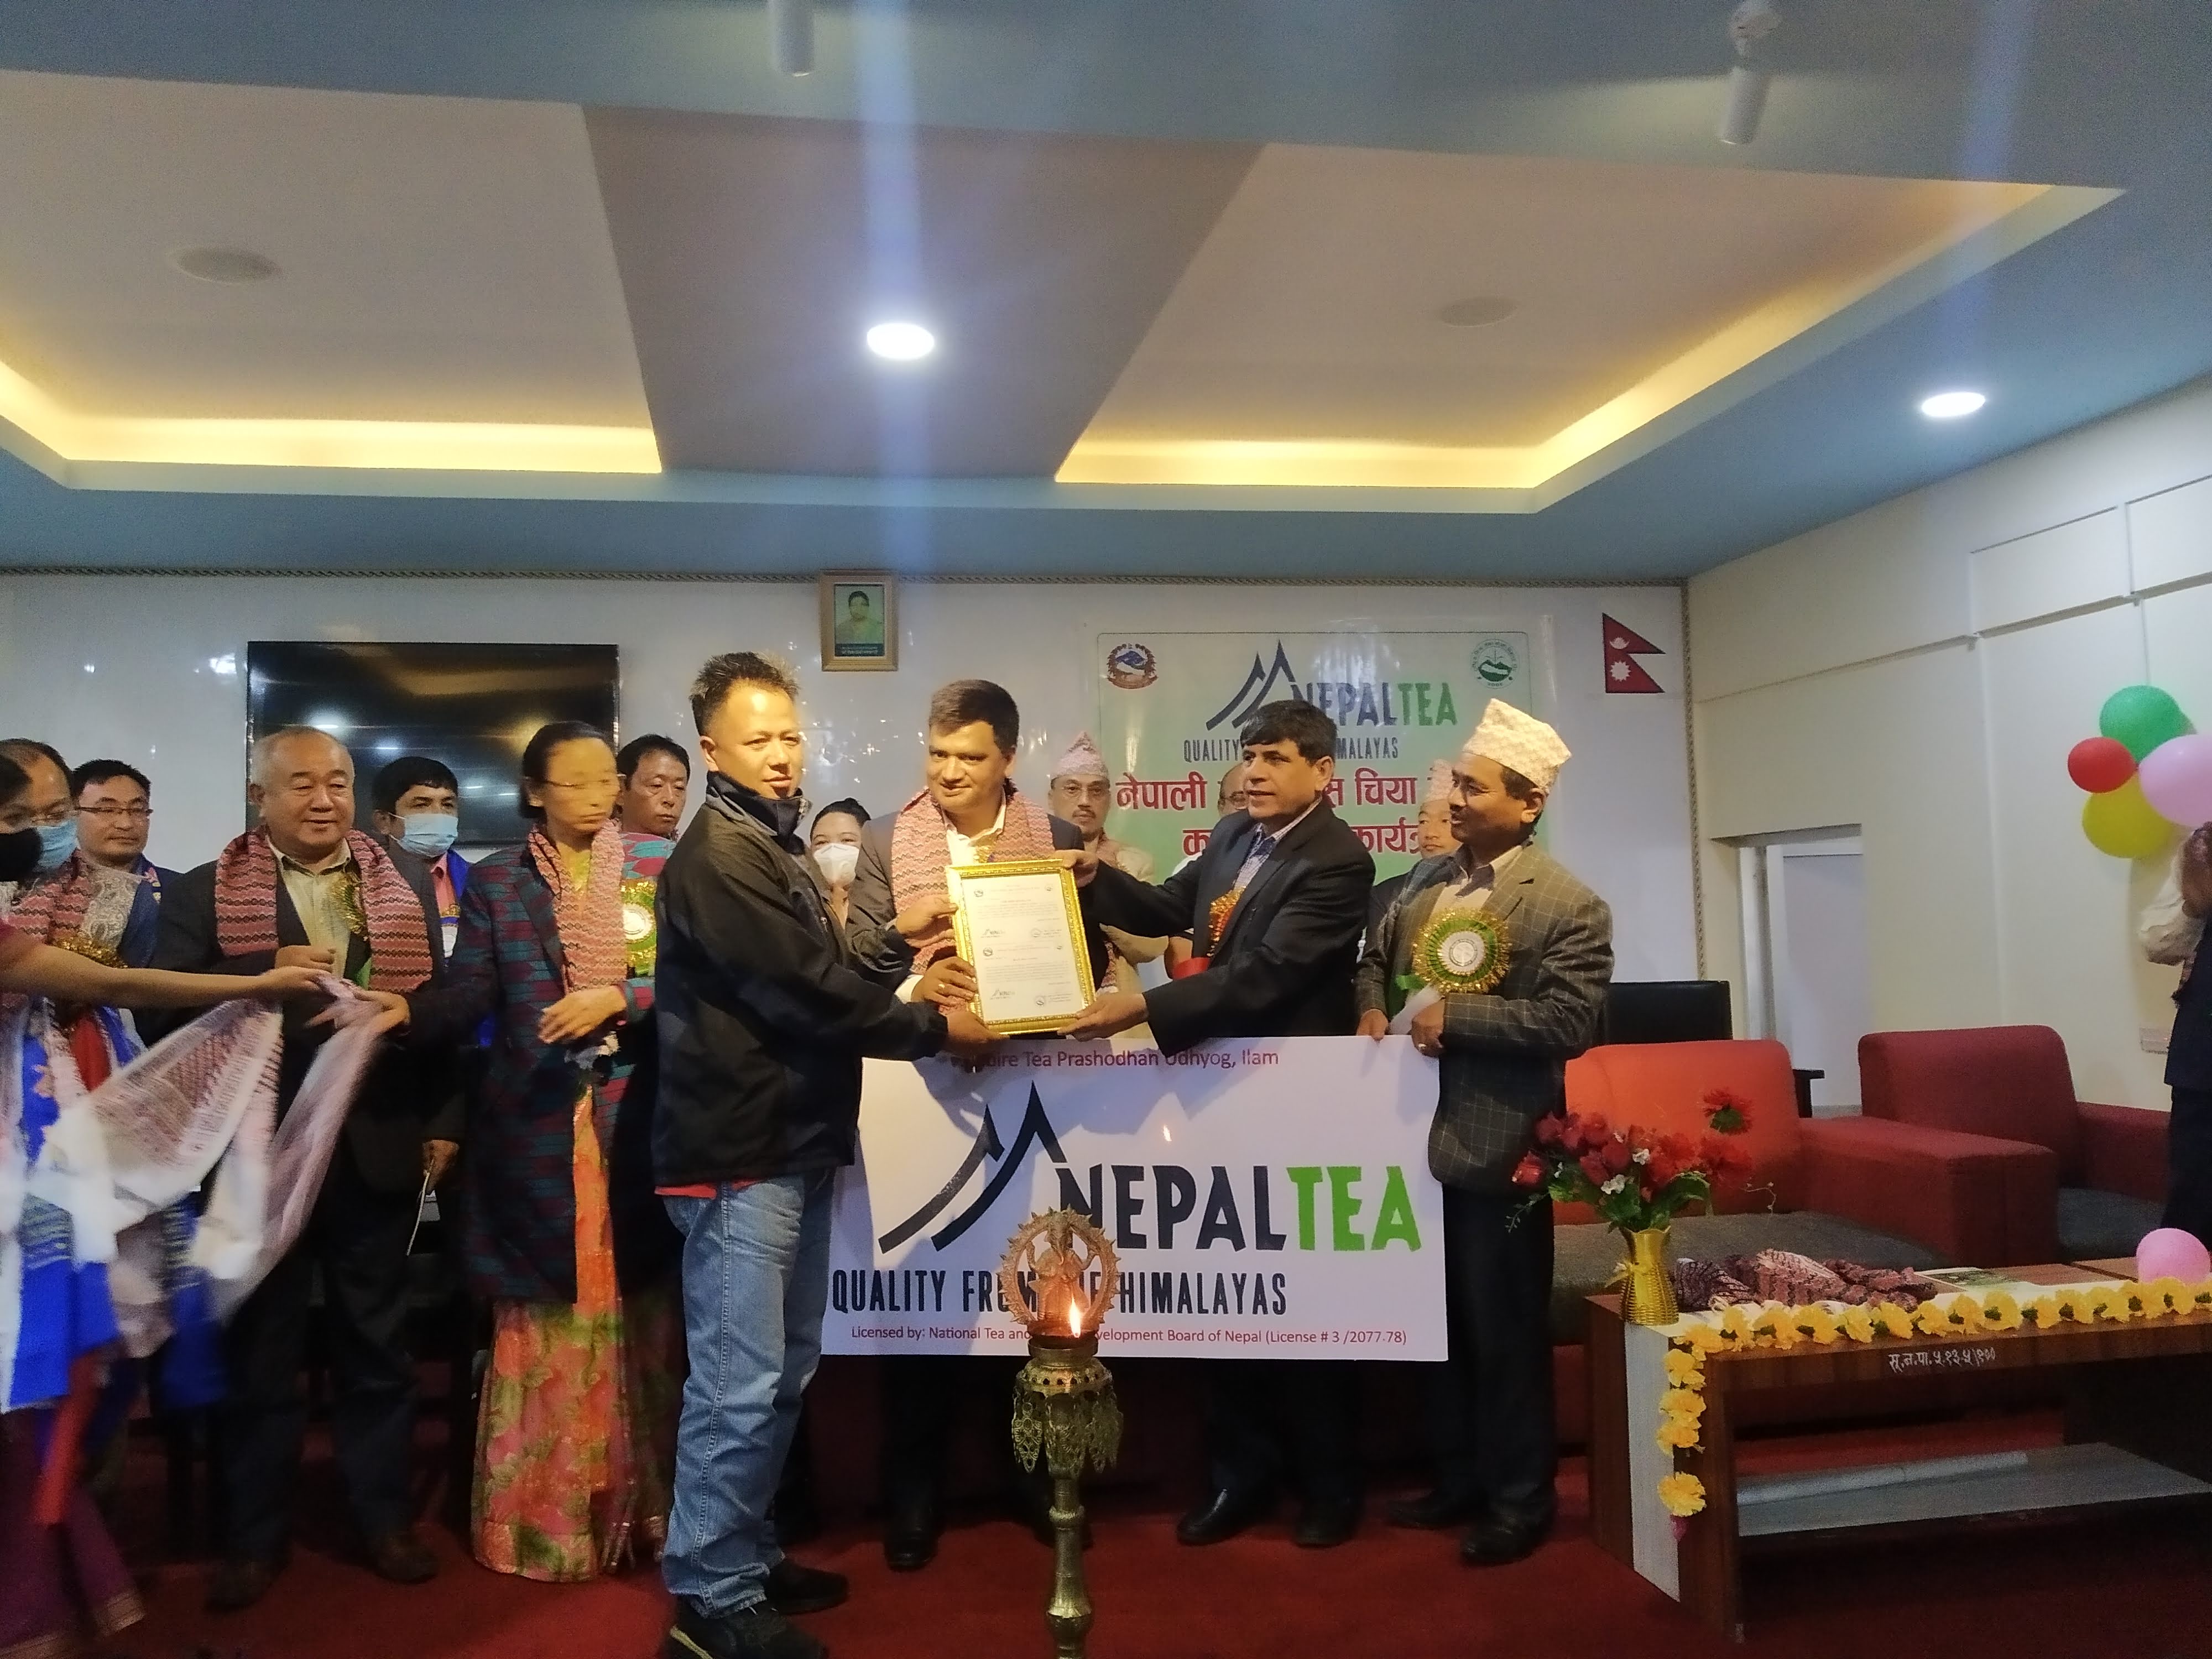 नेपाली चियाको ट्रेडमार्क कार्यान्वयनमा, १२ वटा चिया उद्योगले पाए ट्रेडमार्क इजाजत 